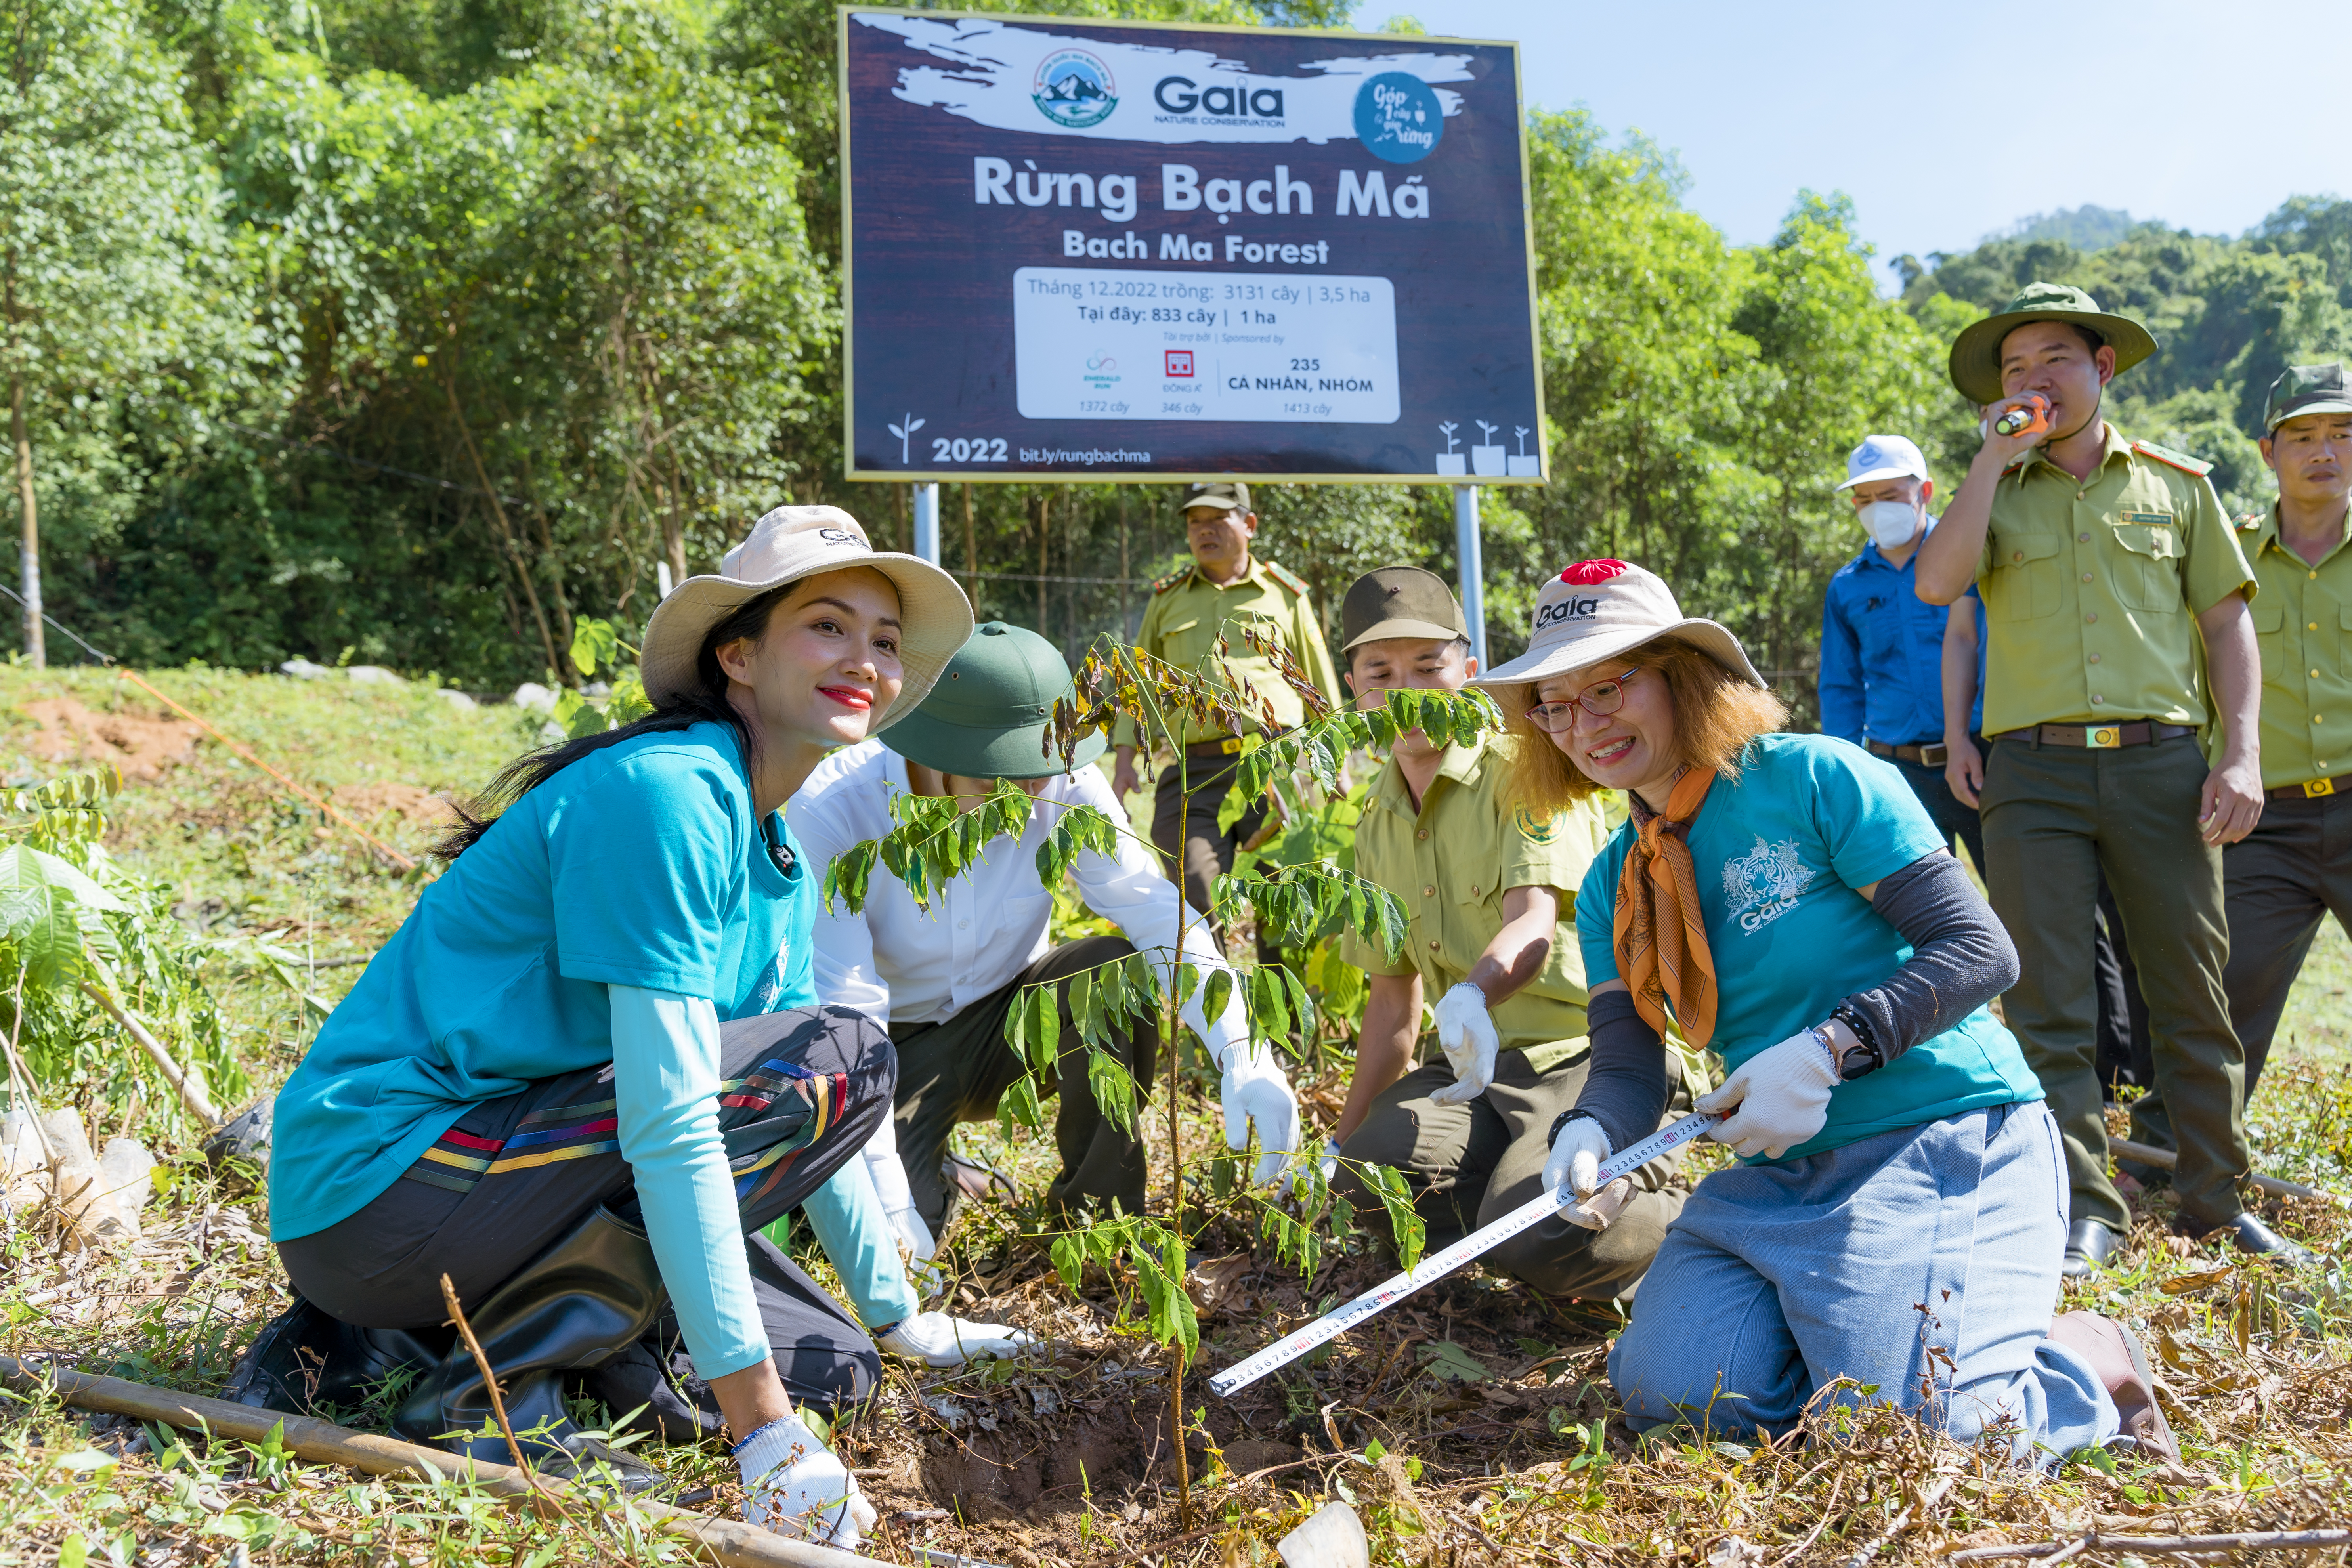 Trung tâm Bảo tồn Thiên nhiên Gaia và Vườn quốc gia Bạch Mã khởi động đợt trồng rừng Bạch Mã lần 4 với sự tham gia của Hoa hậu Hoàn vũ Việt Nam 2017 H’Hen Niê